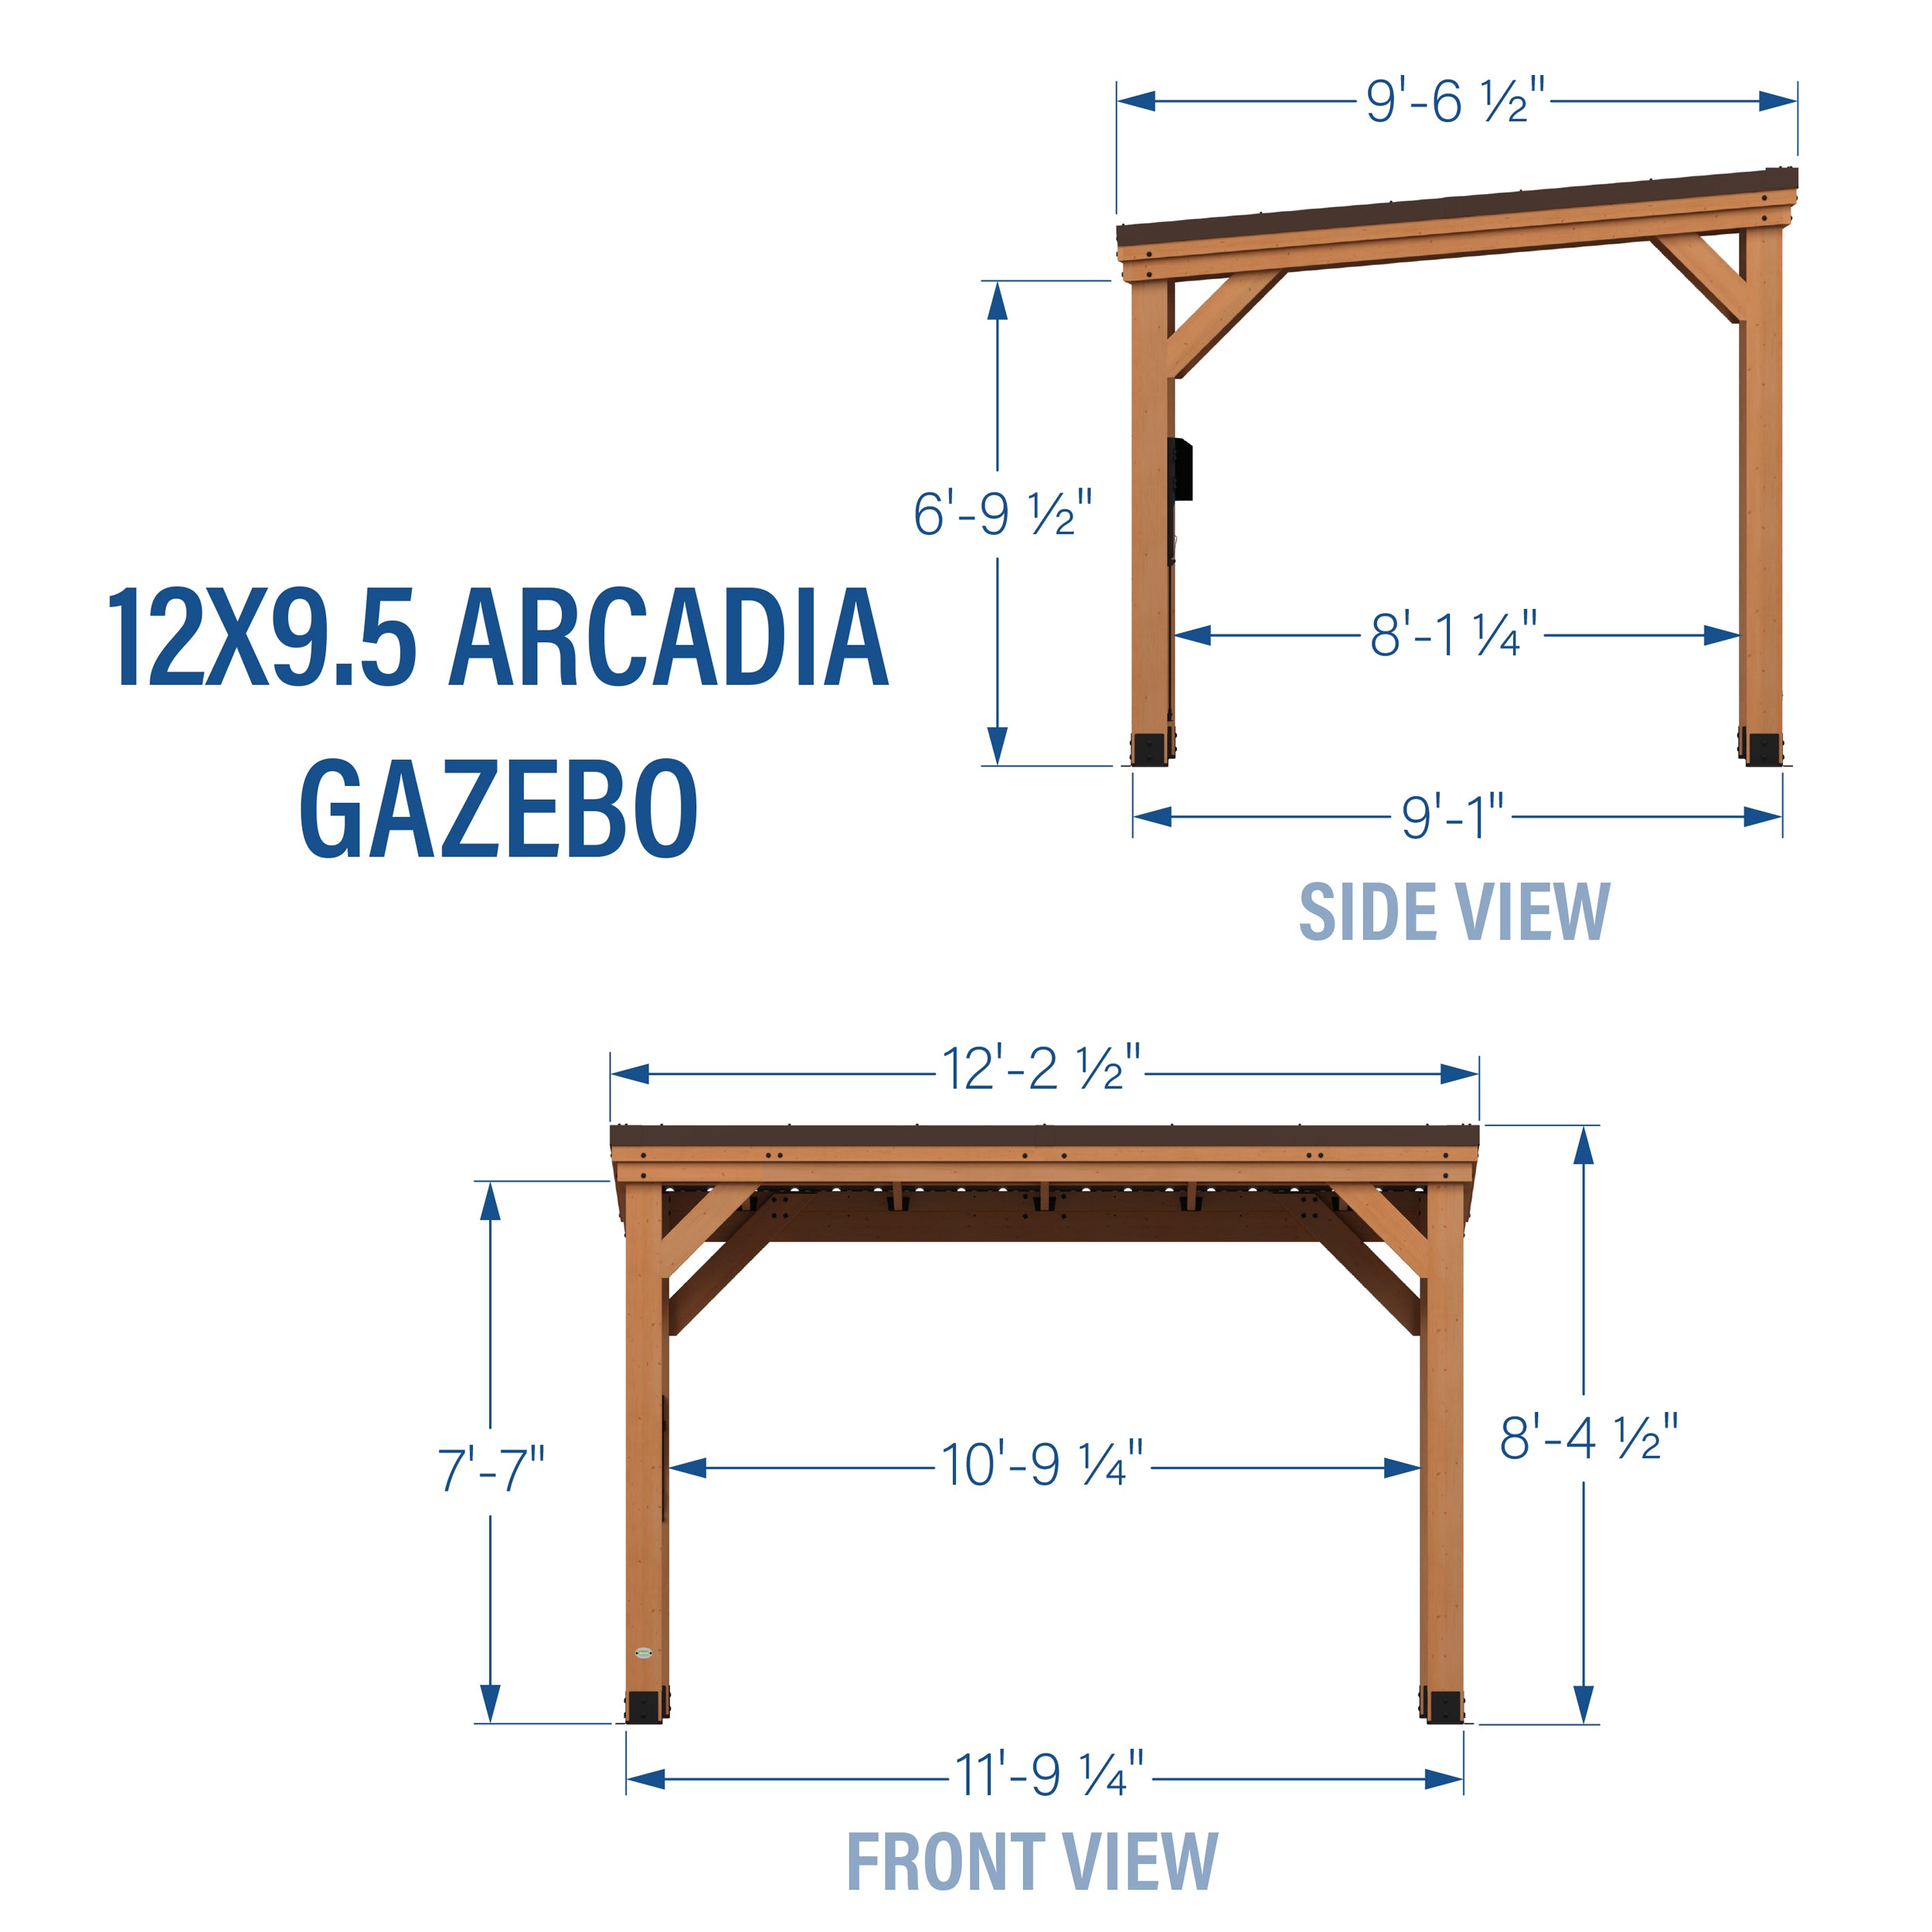 12x9.5 Arcadia Gazebo